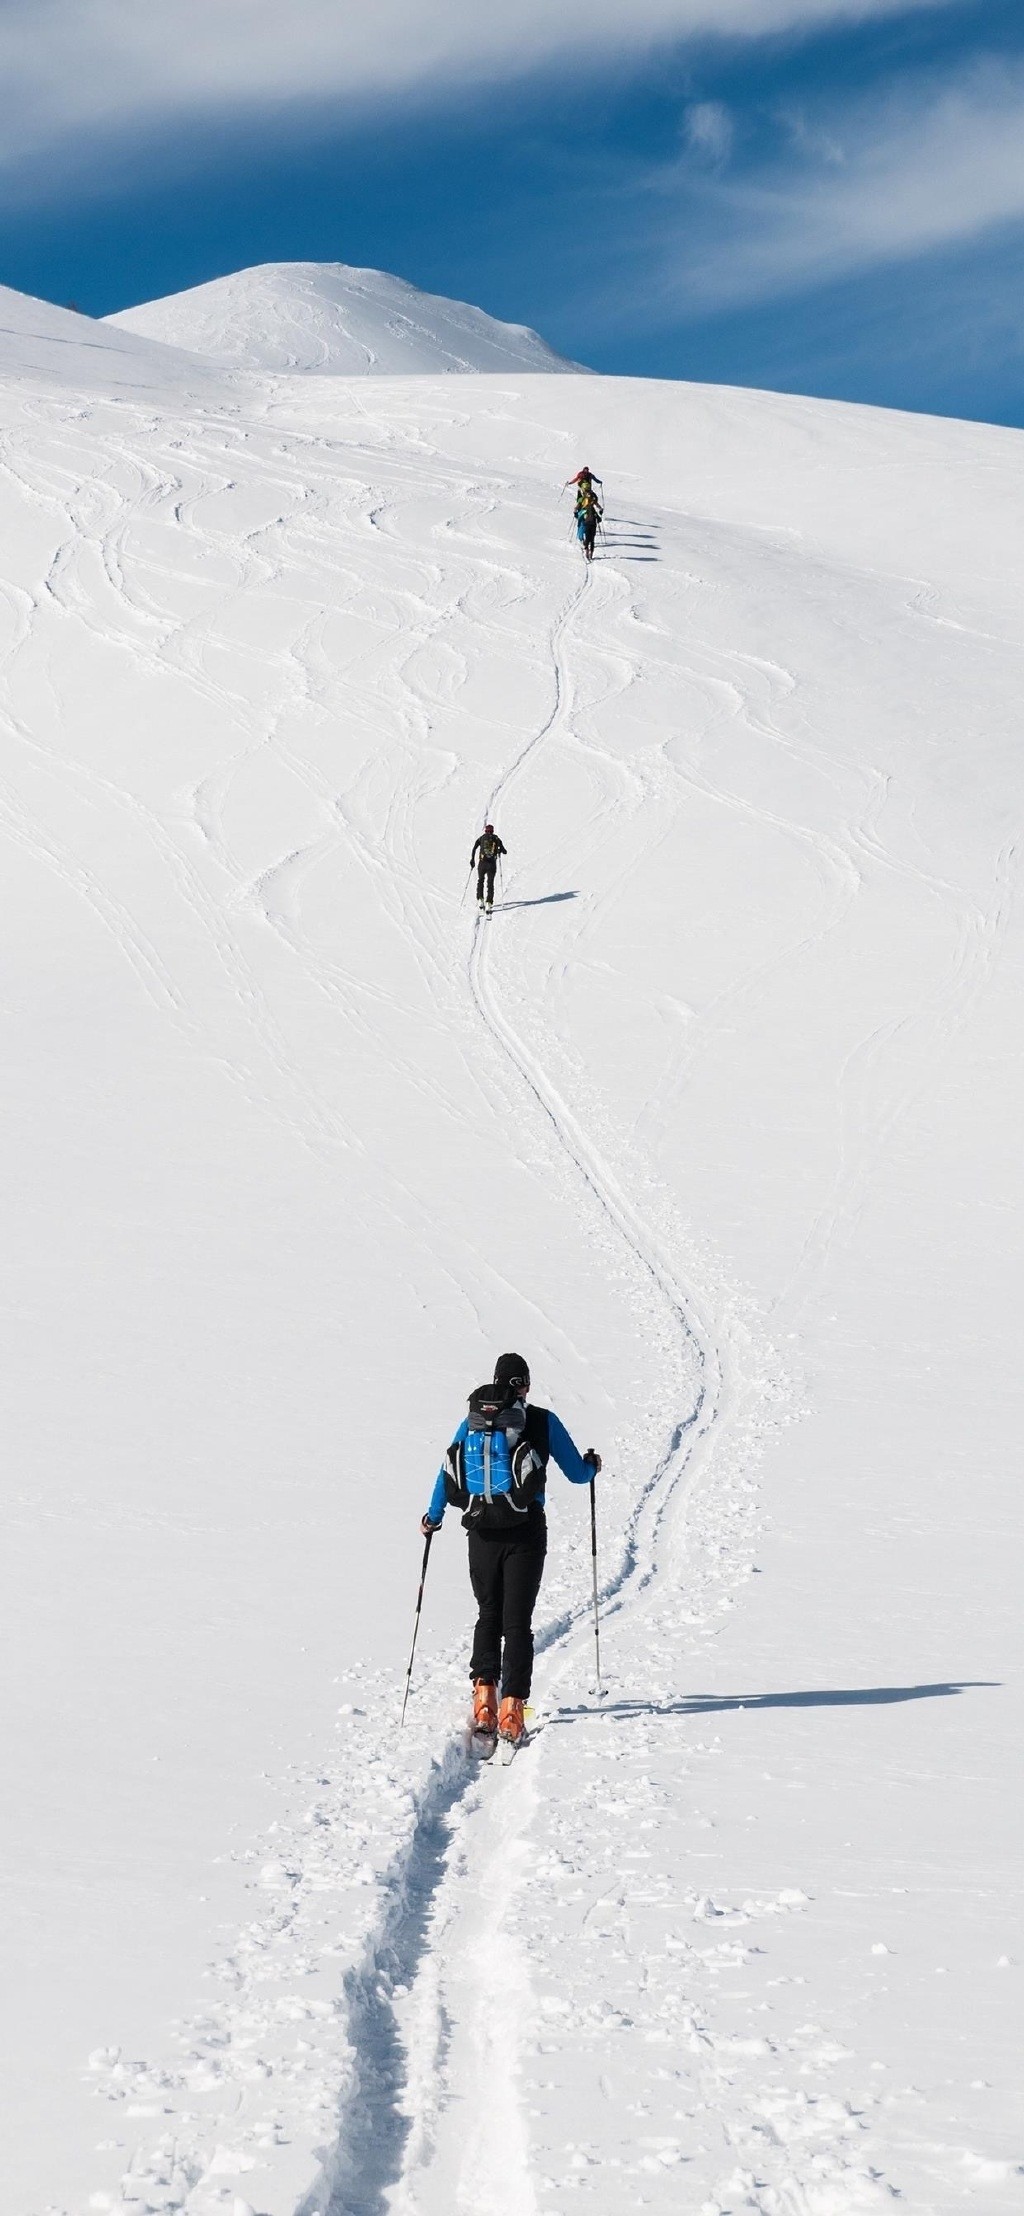 体育运动滑雪高清摄影手机壁纸